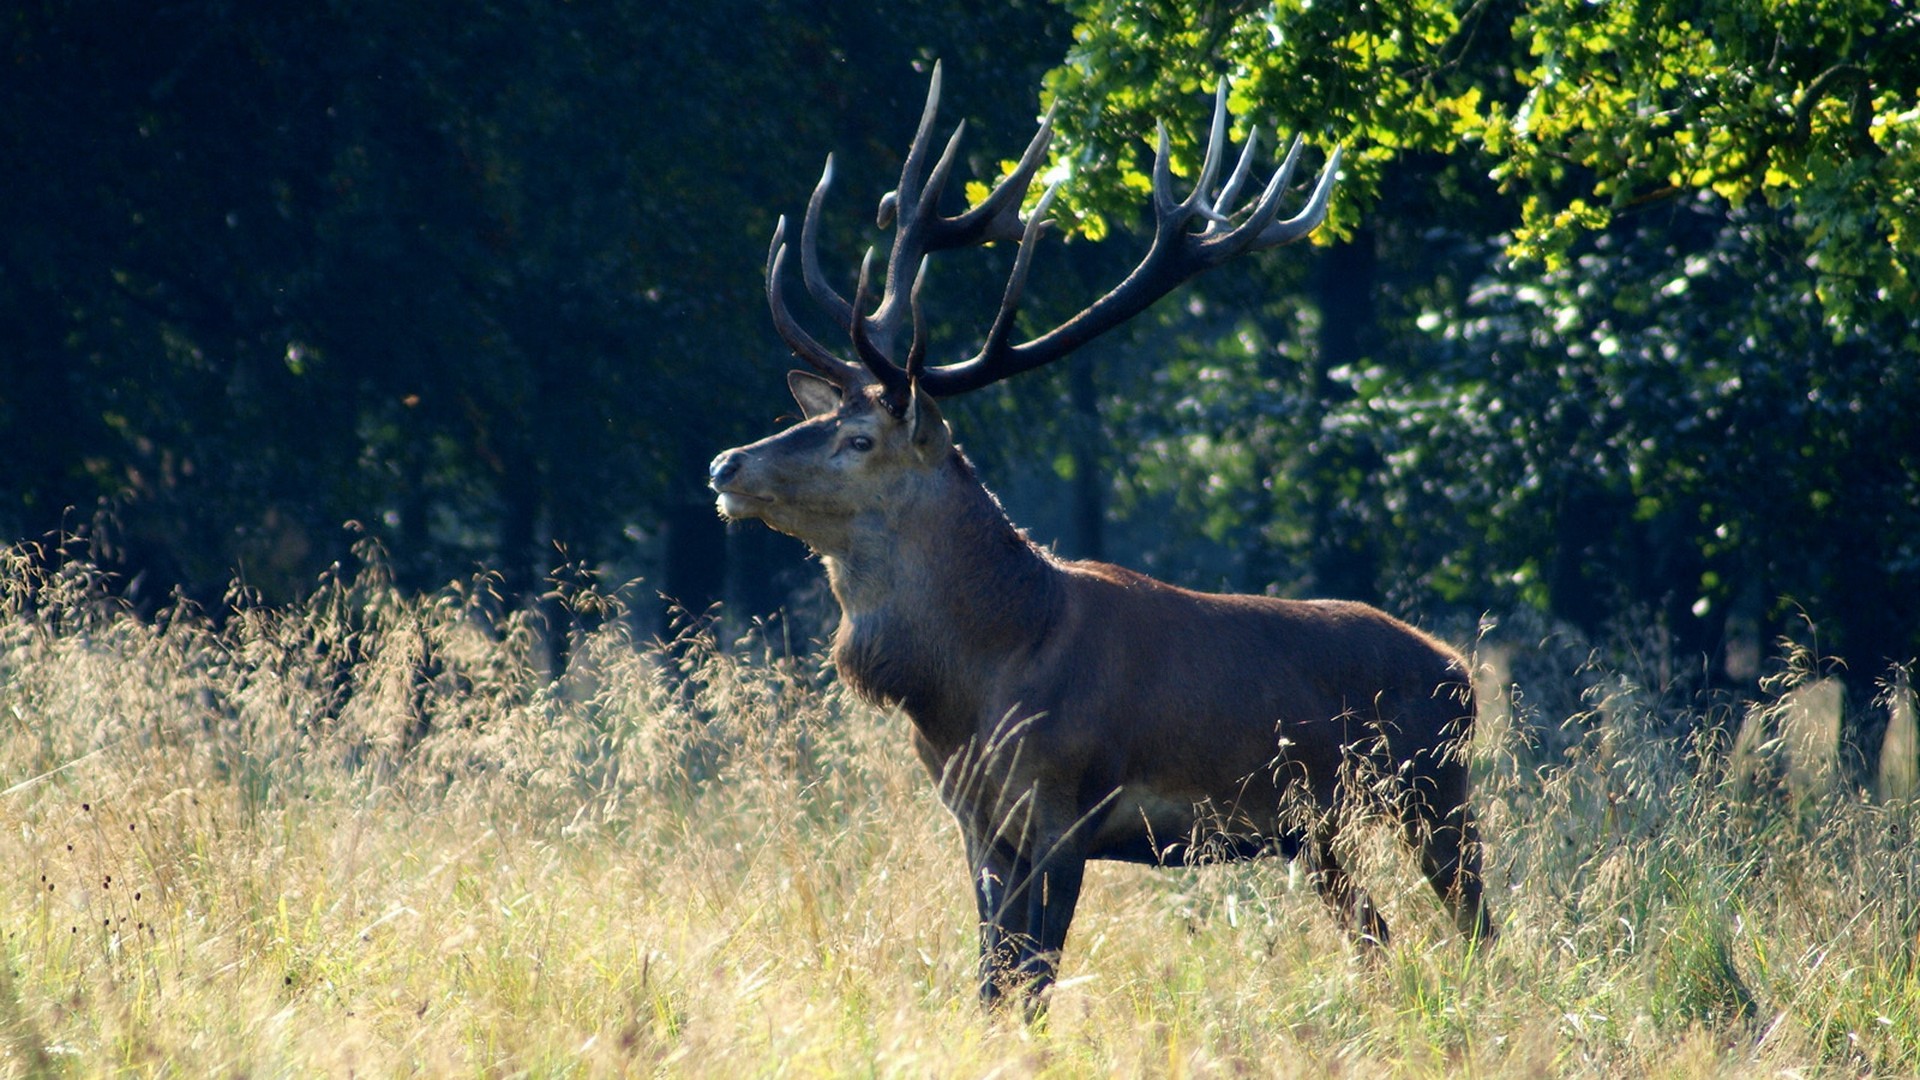 nature, animals, deer - desktop wallpaper